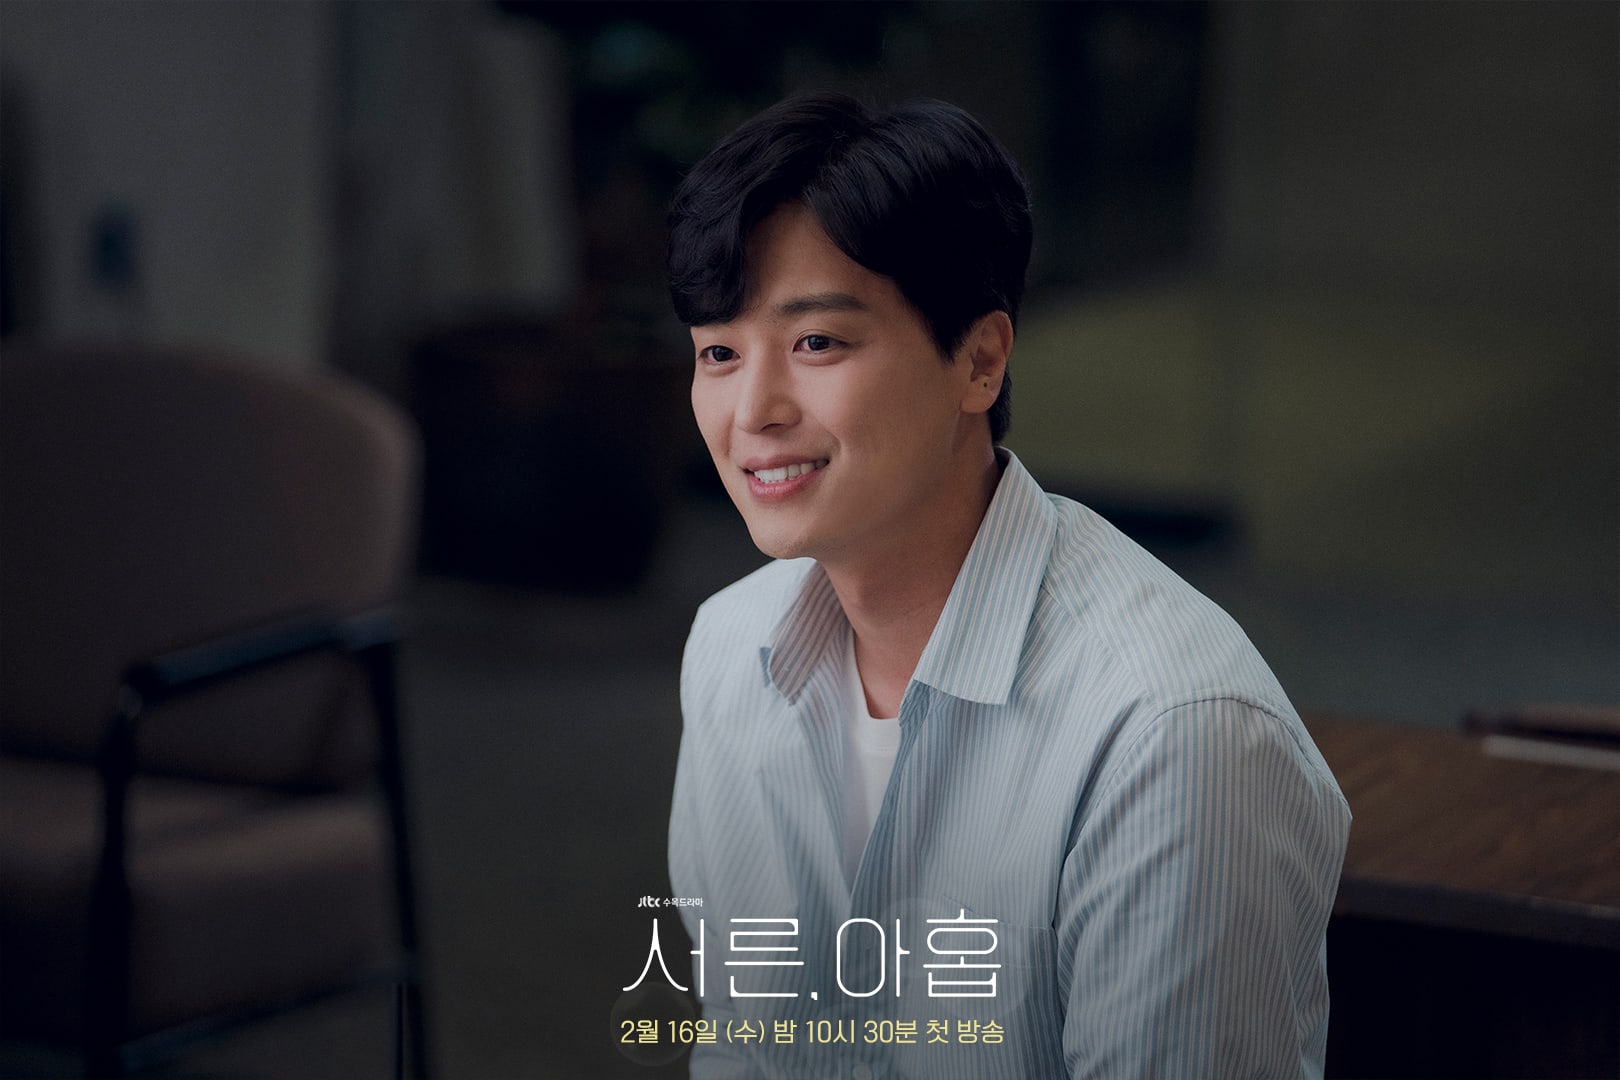 phim 39 Yeon Woo Jin vai Kim Sun Woo - 39: Phim tâm lý về cuộc đời người phụ nữ trước ngưỡng tuổi 40